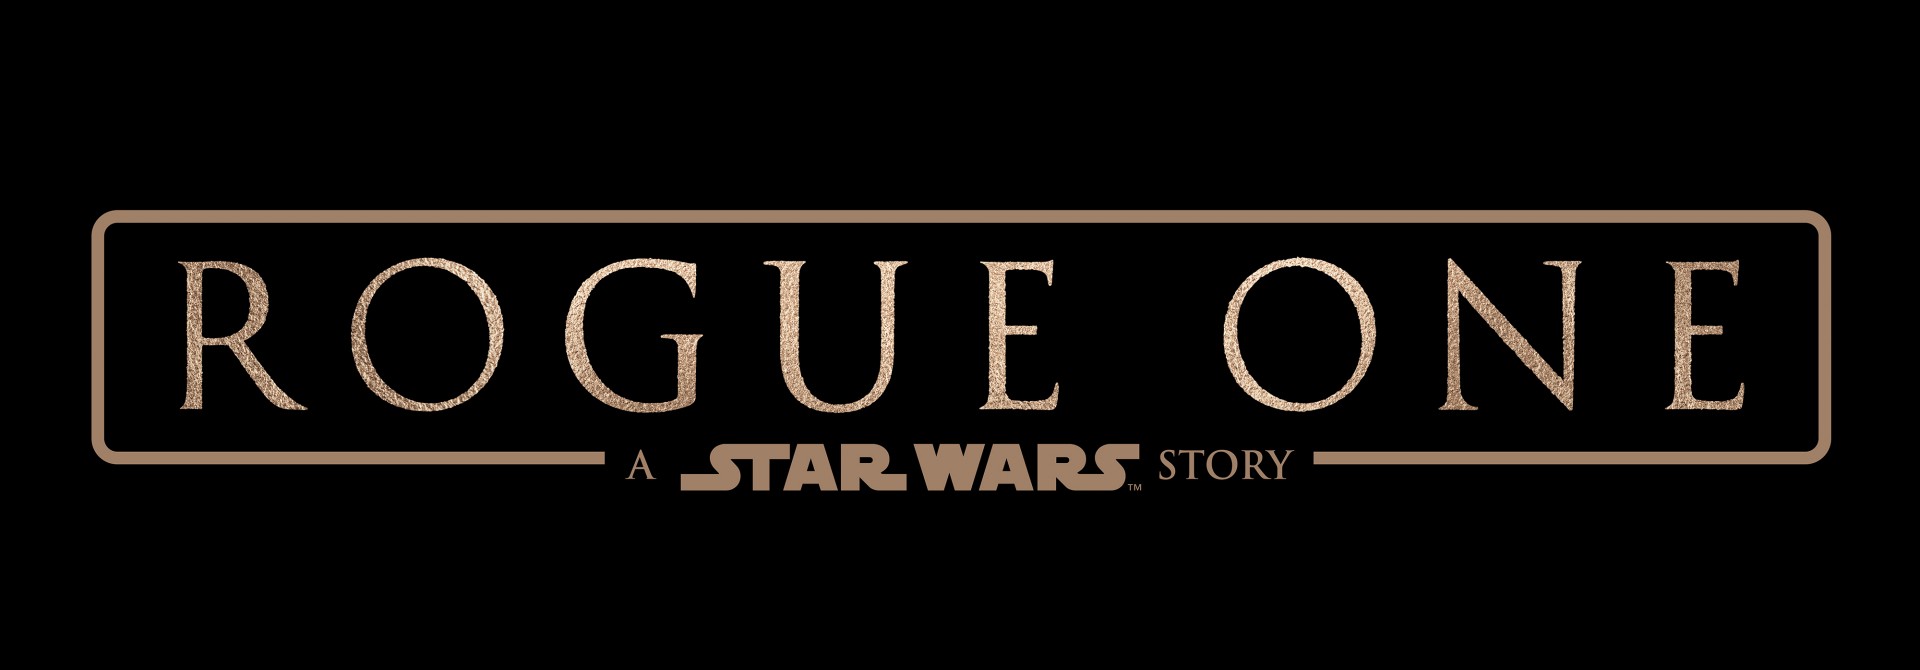 ยิปมัน โผล่! ในภาพแรกกลุ่มตัวละครจาก Star Wars: Rogue One